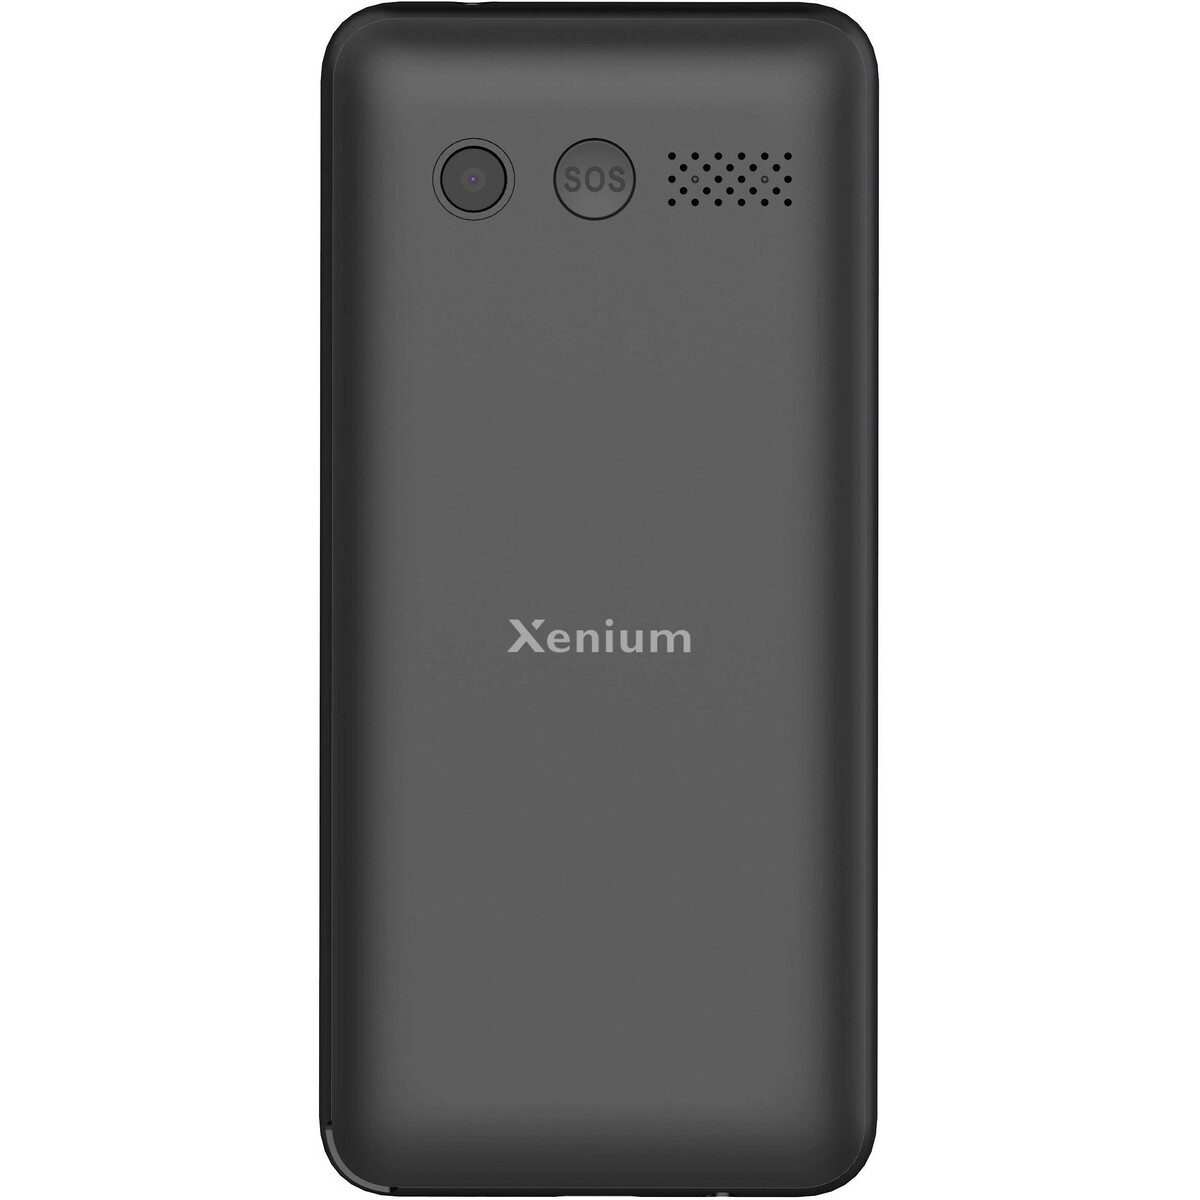 Мобильный телефон Philips Xenium X700, черный 